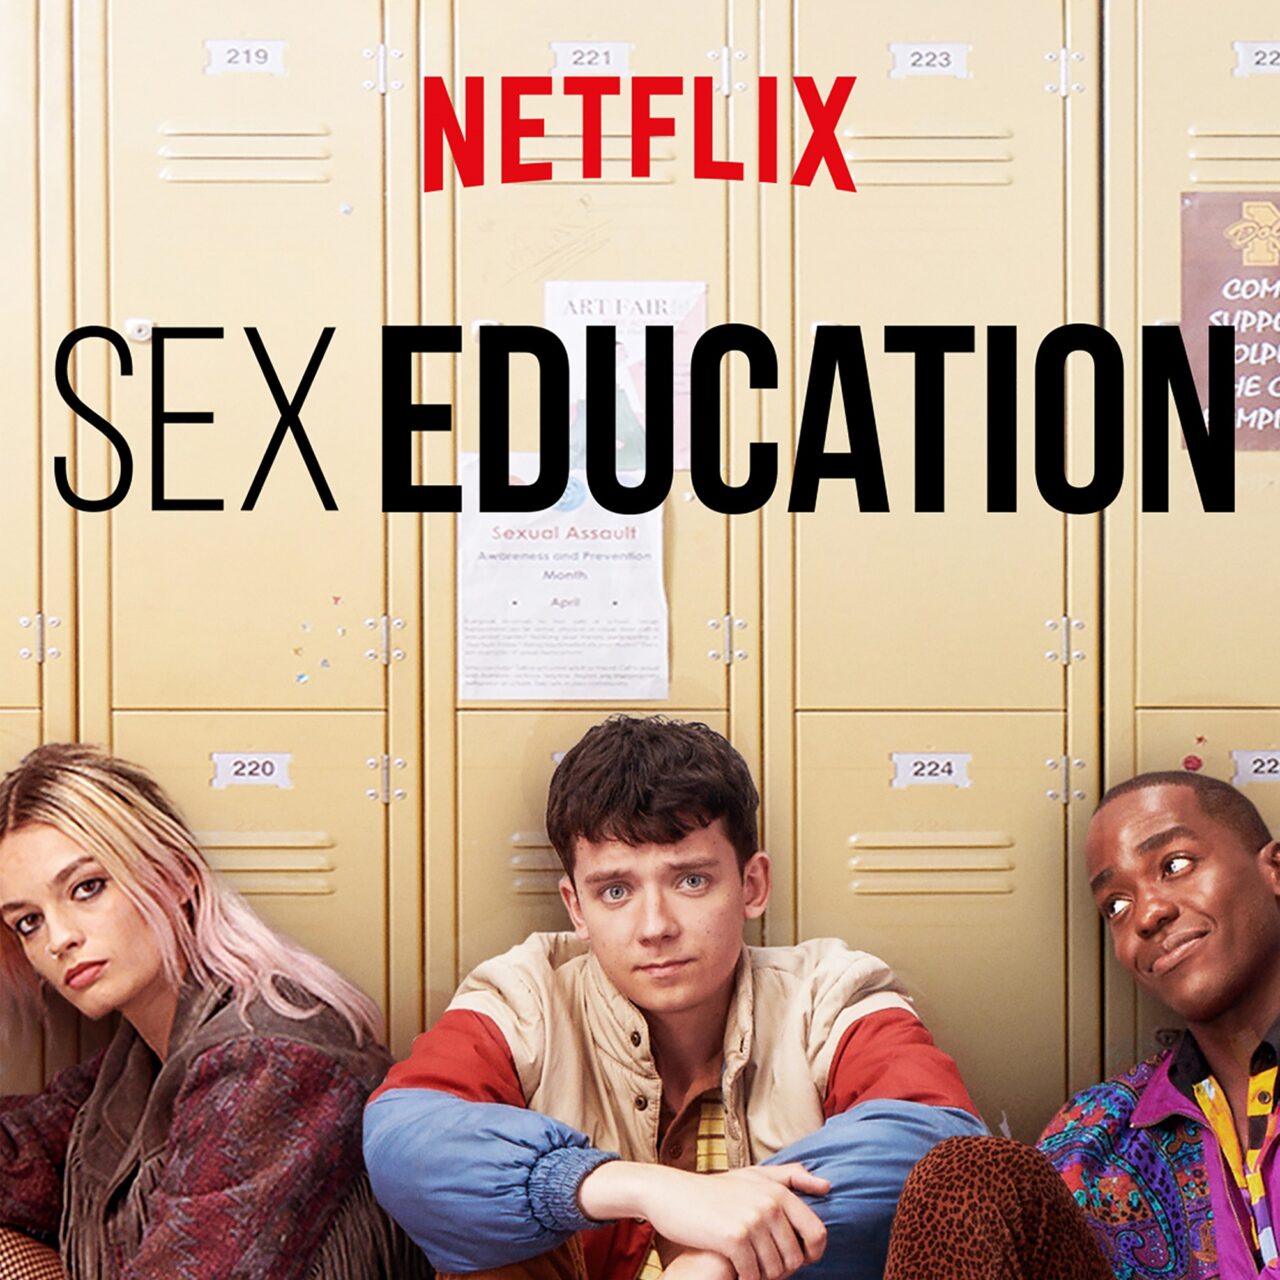 16+ Netflix Sex Education